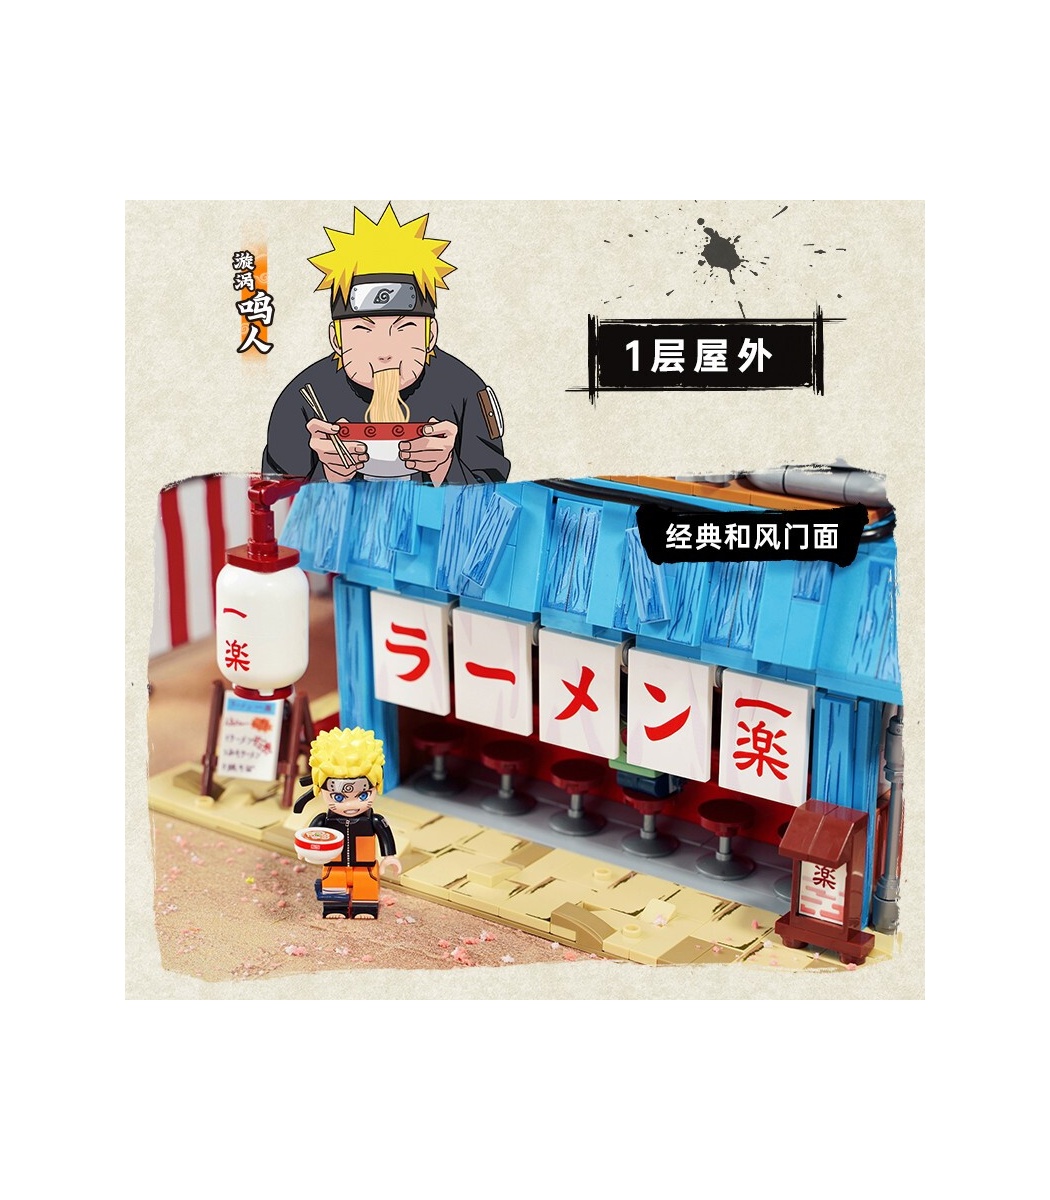 Keeppley K20505 Ensemble de jouets de blocs de construction Naruto Gaara Vs  Deidara 